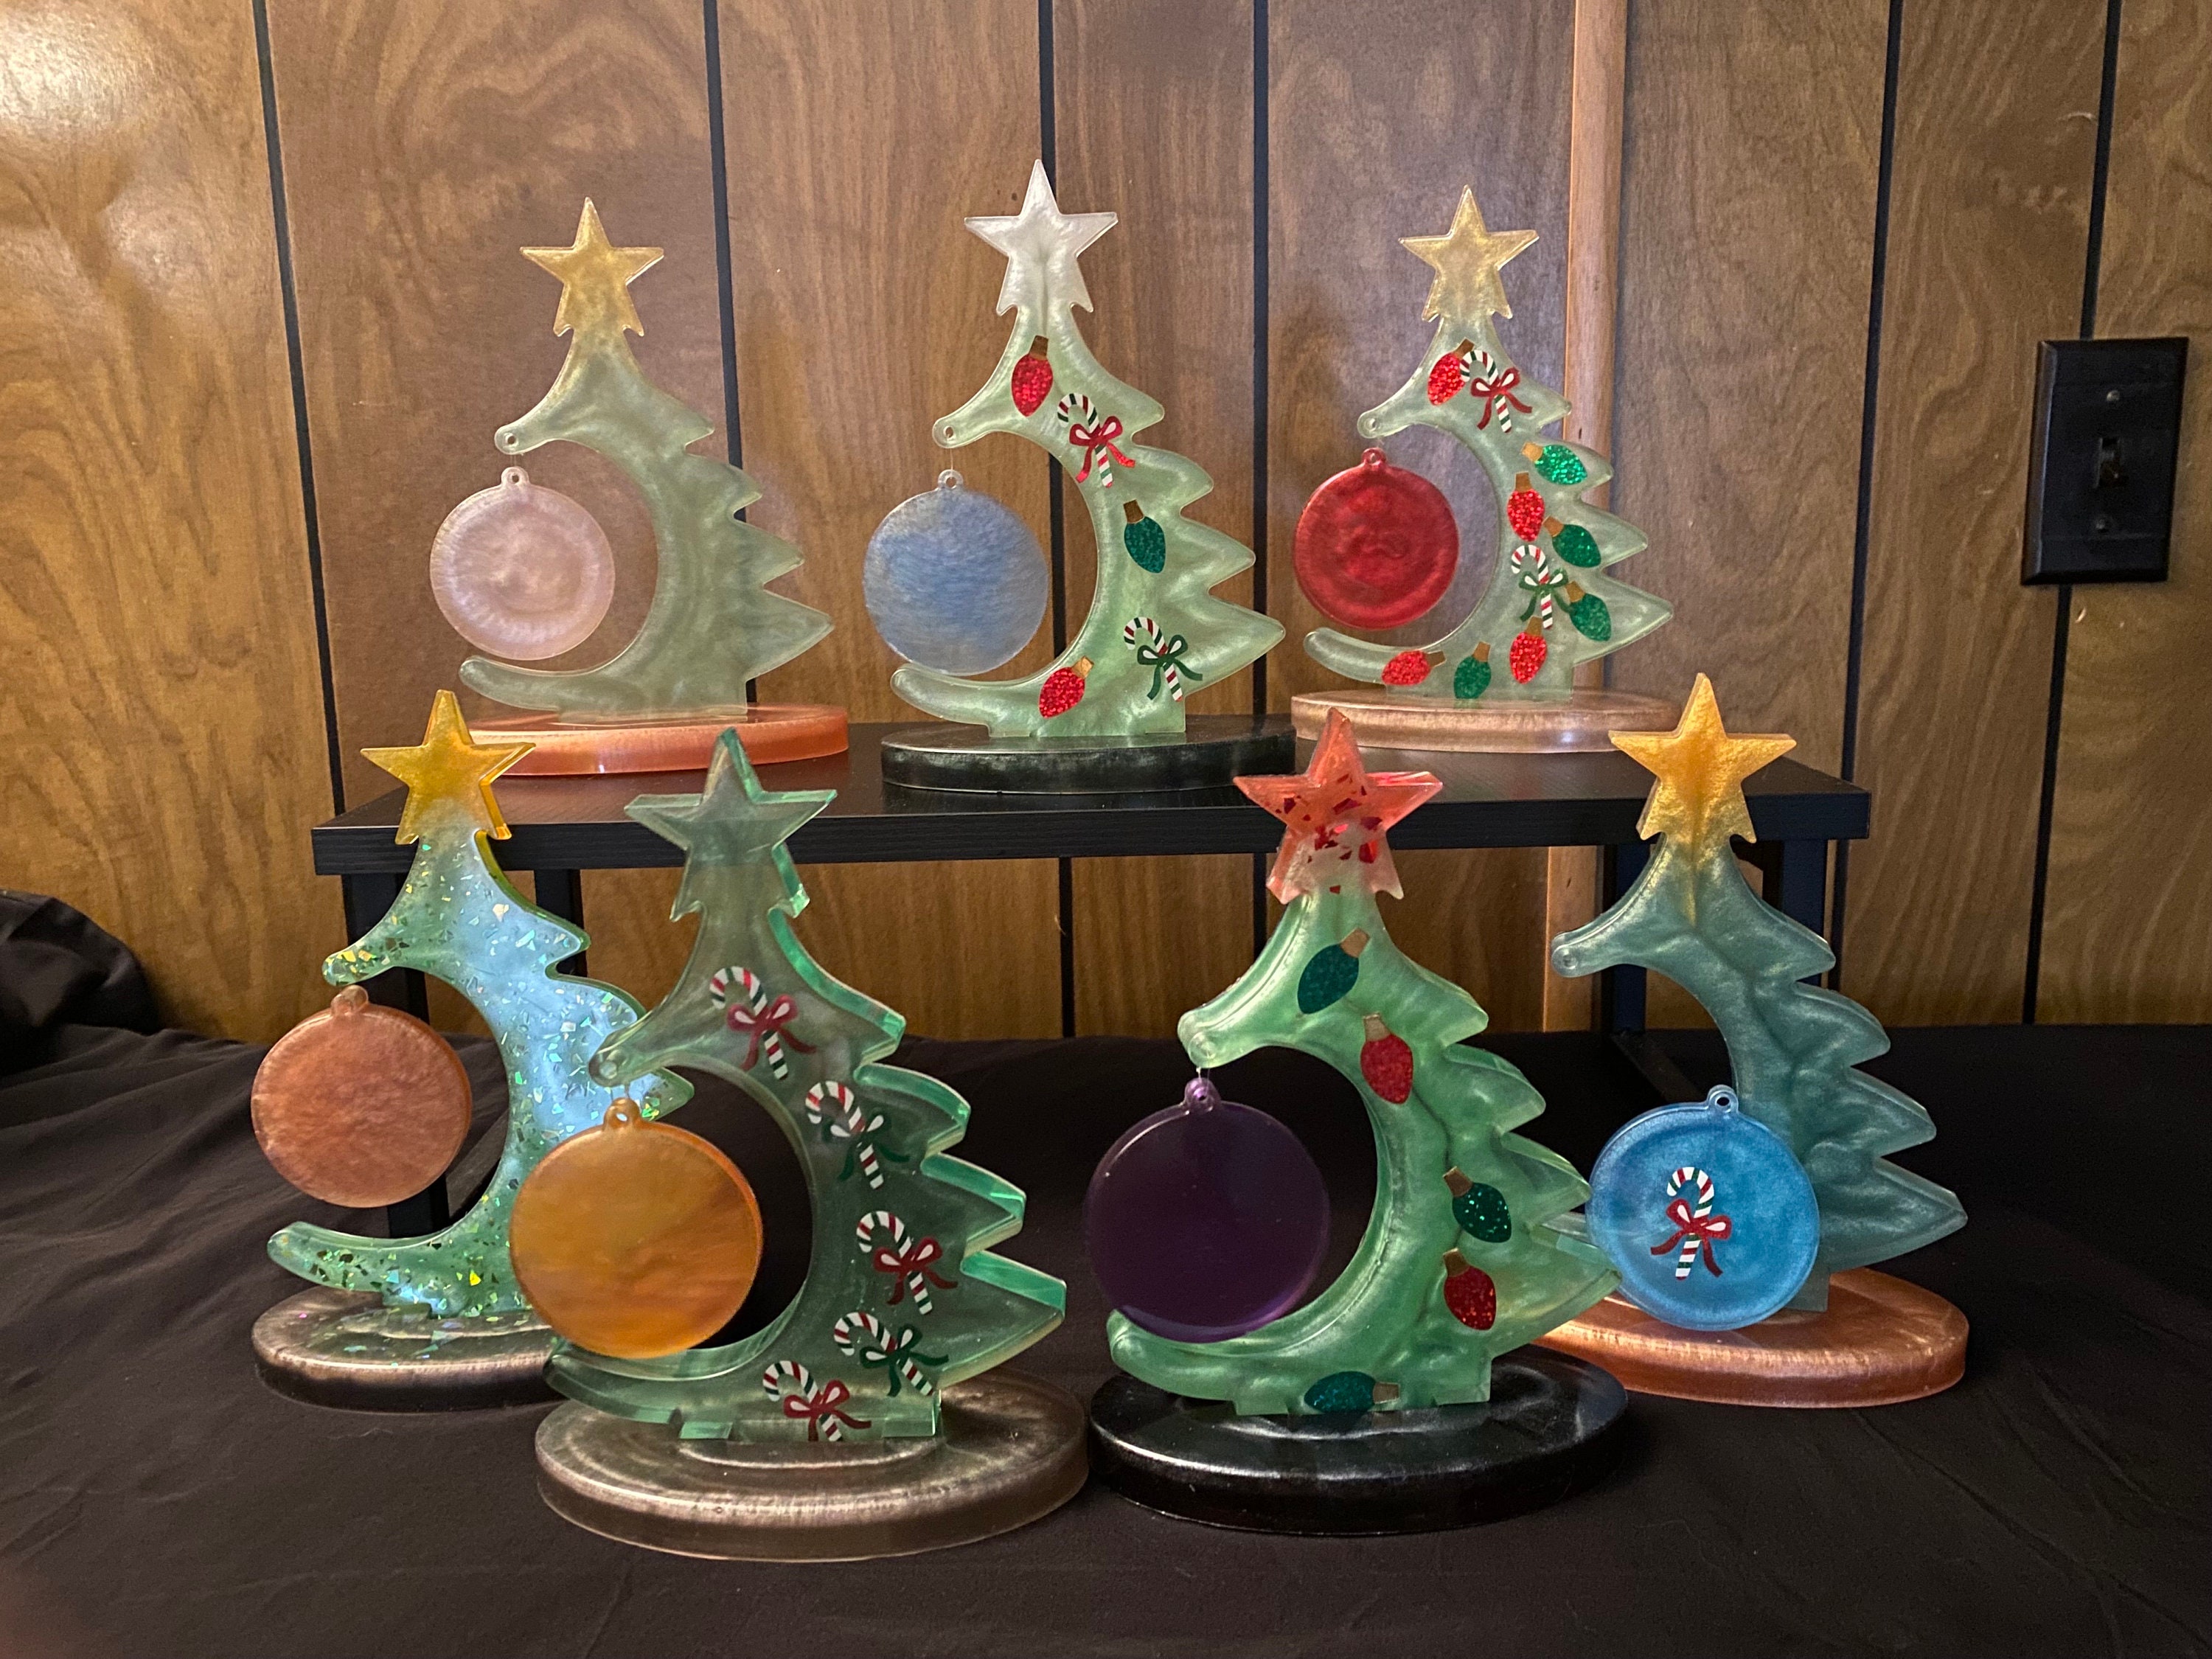 Textured Christmas Tree With Glass, Block Art, Crushed Glass Art, Resin  Art, Christmas Tree, Colorful Christmas Lights, Christmas Painting 